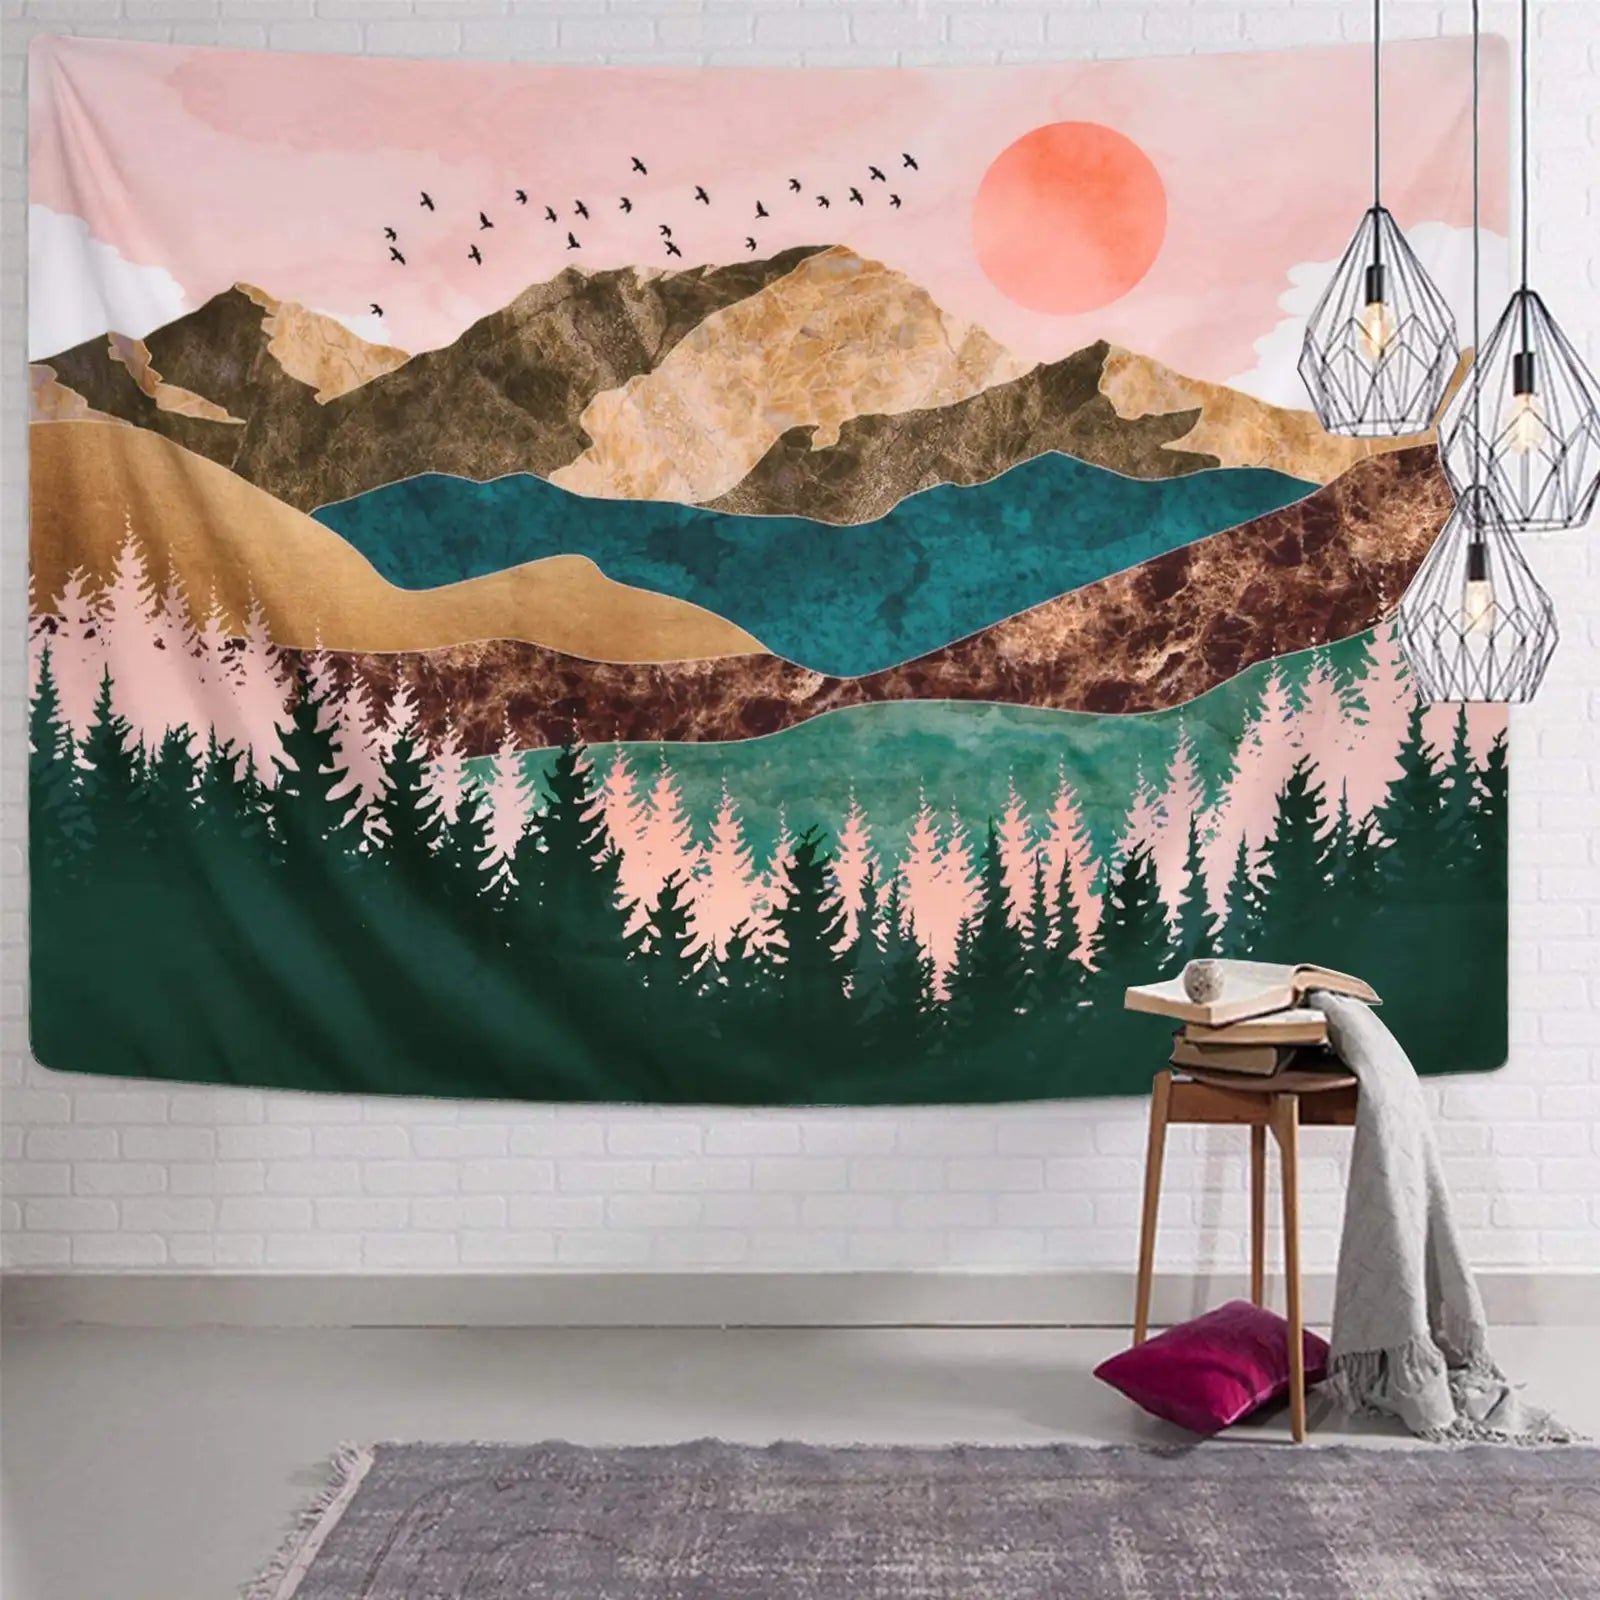 Tapiz de montaña, tapiz de árbol forestal, tapiz de puesta de sol, tapiz de paisaje natural para colgar en la pared de la habitación 